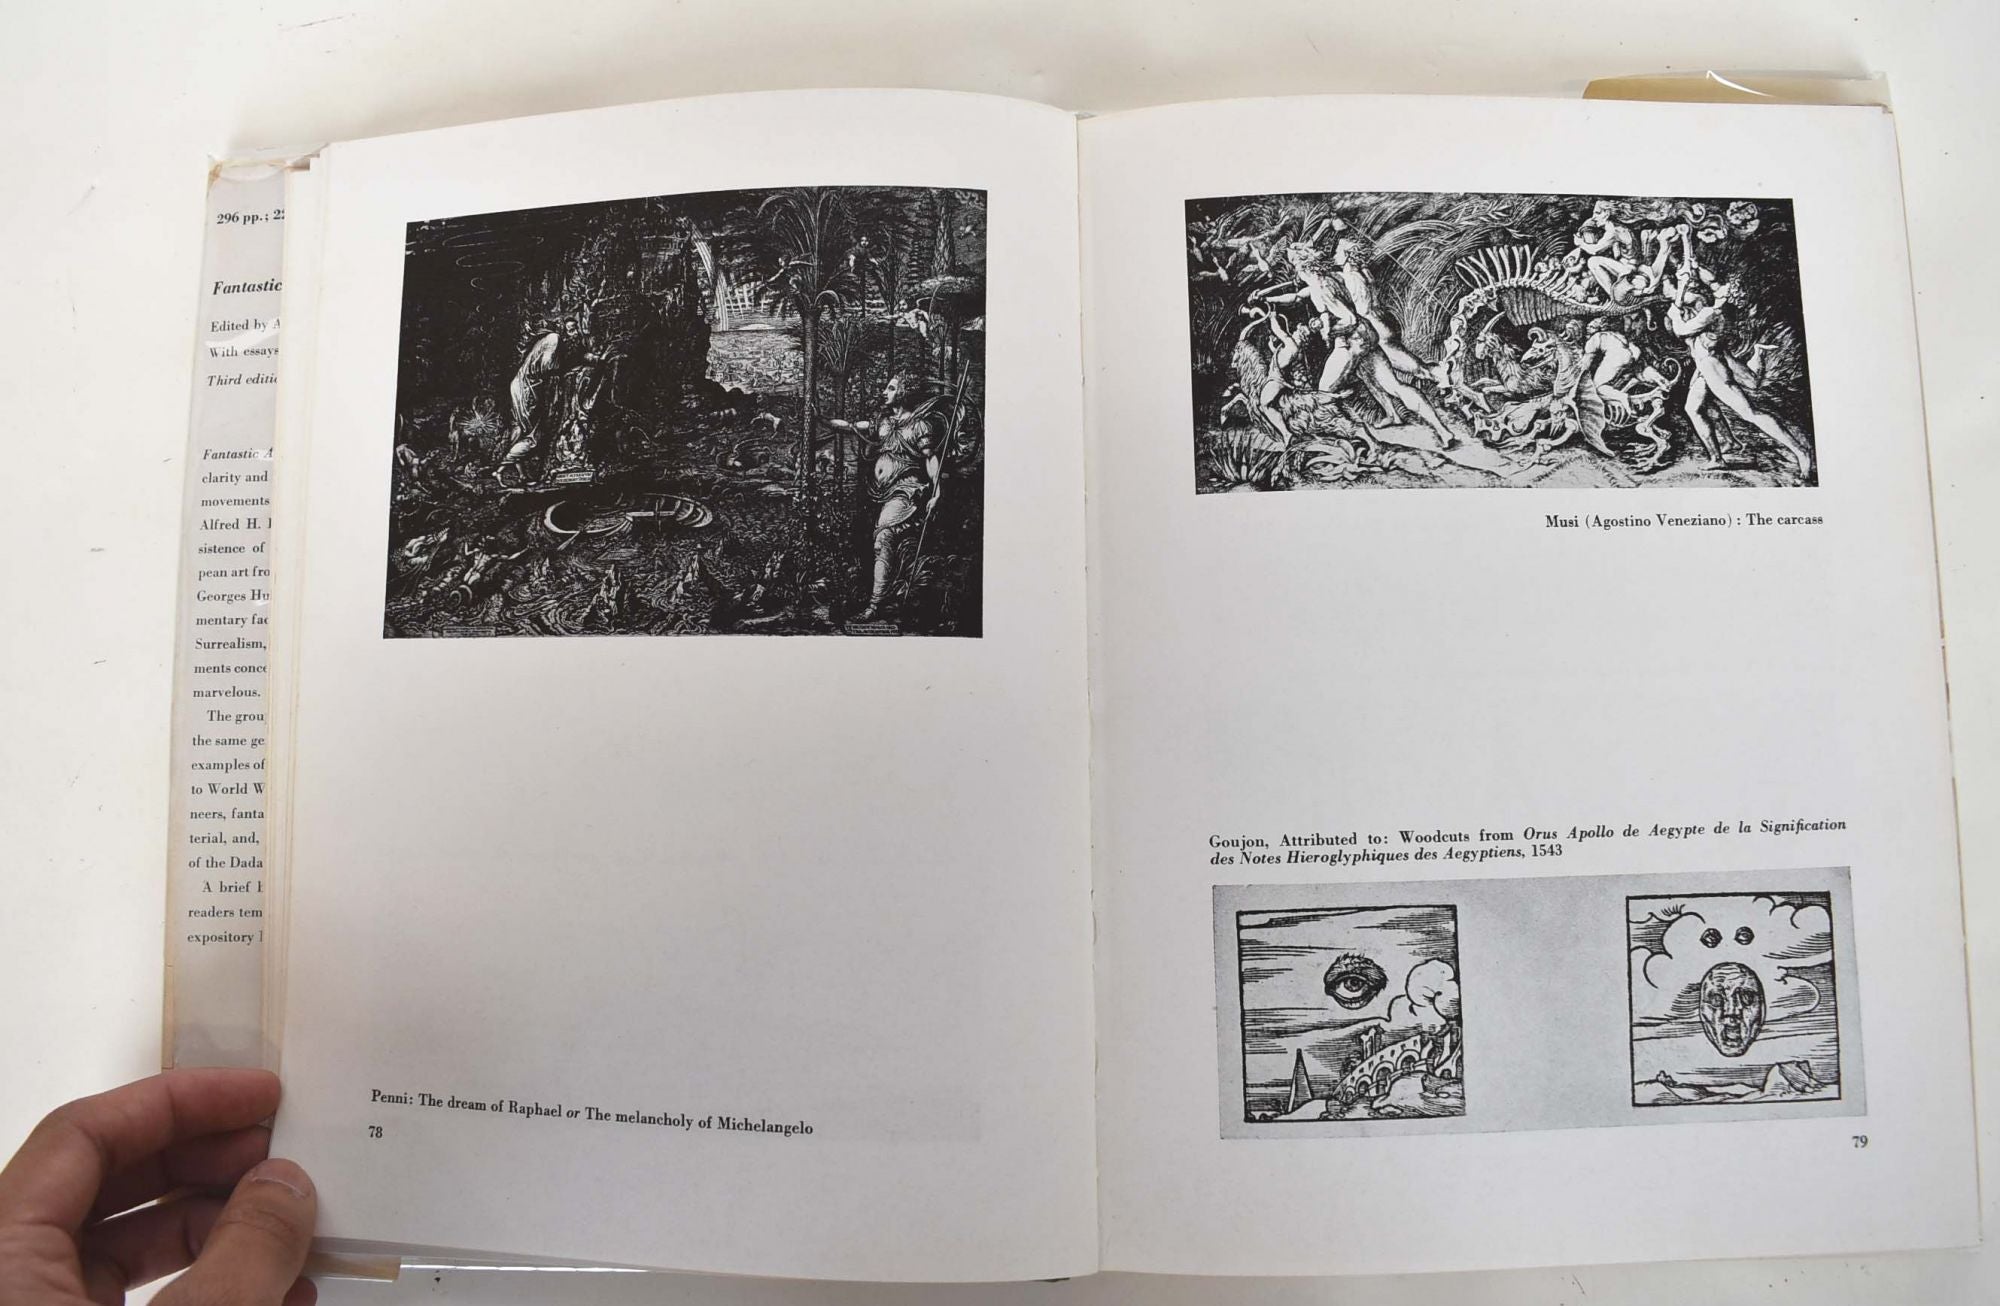 Fantastic Art, Dada, Surrealism | Alfred H. Jr. Barr, Georges 